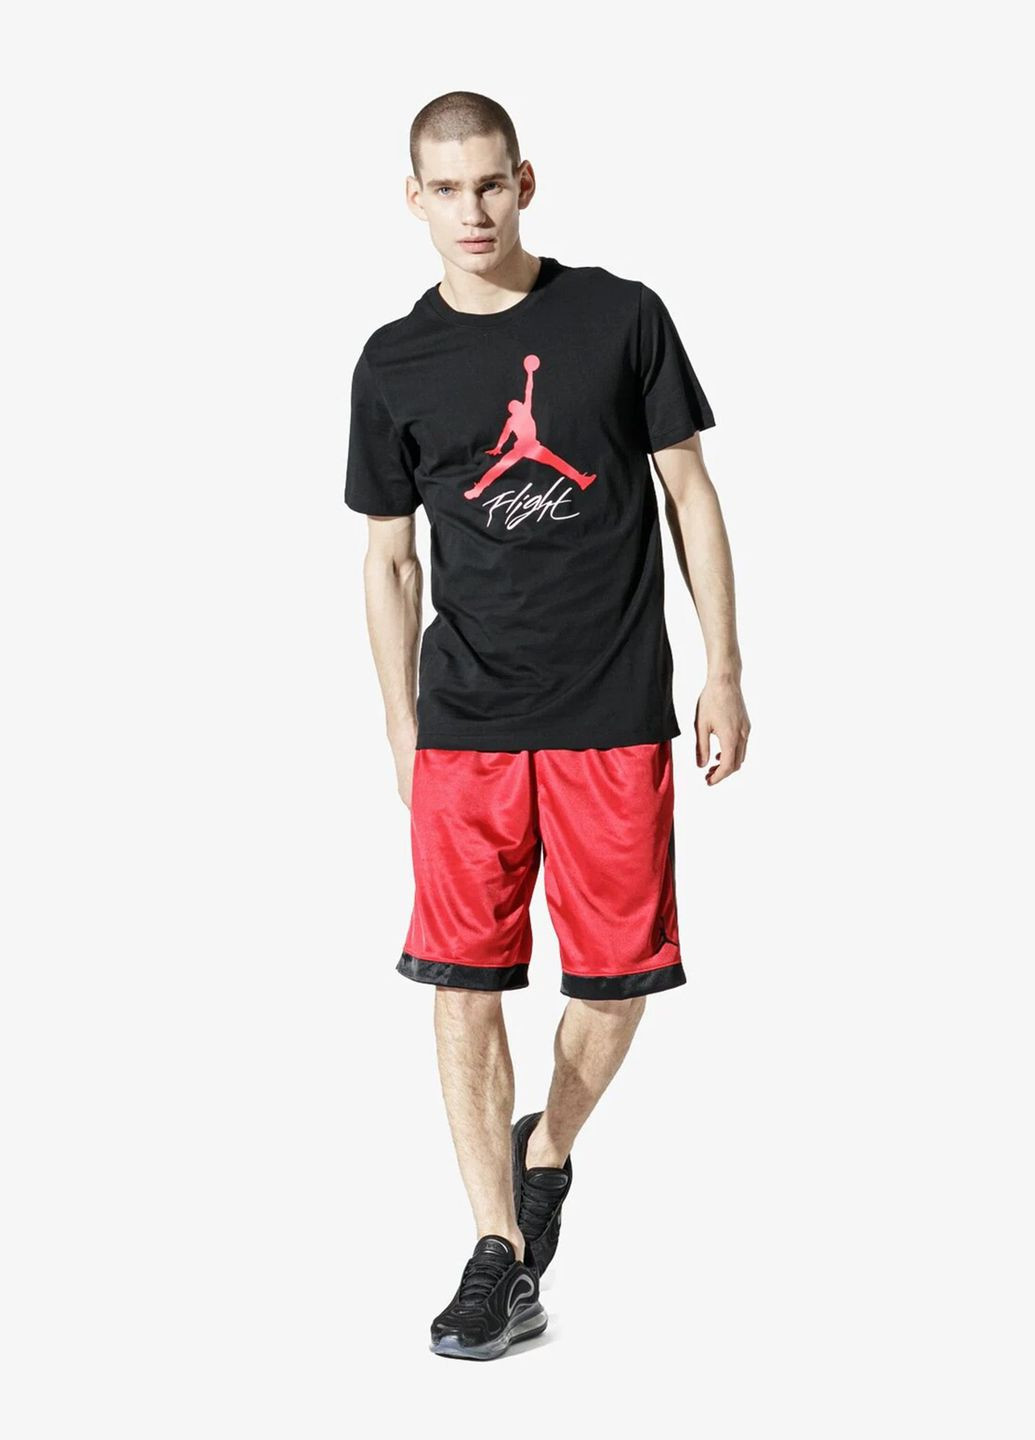 Черная футболка мужская jumpman flight ao0664-010 черная Jordan